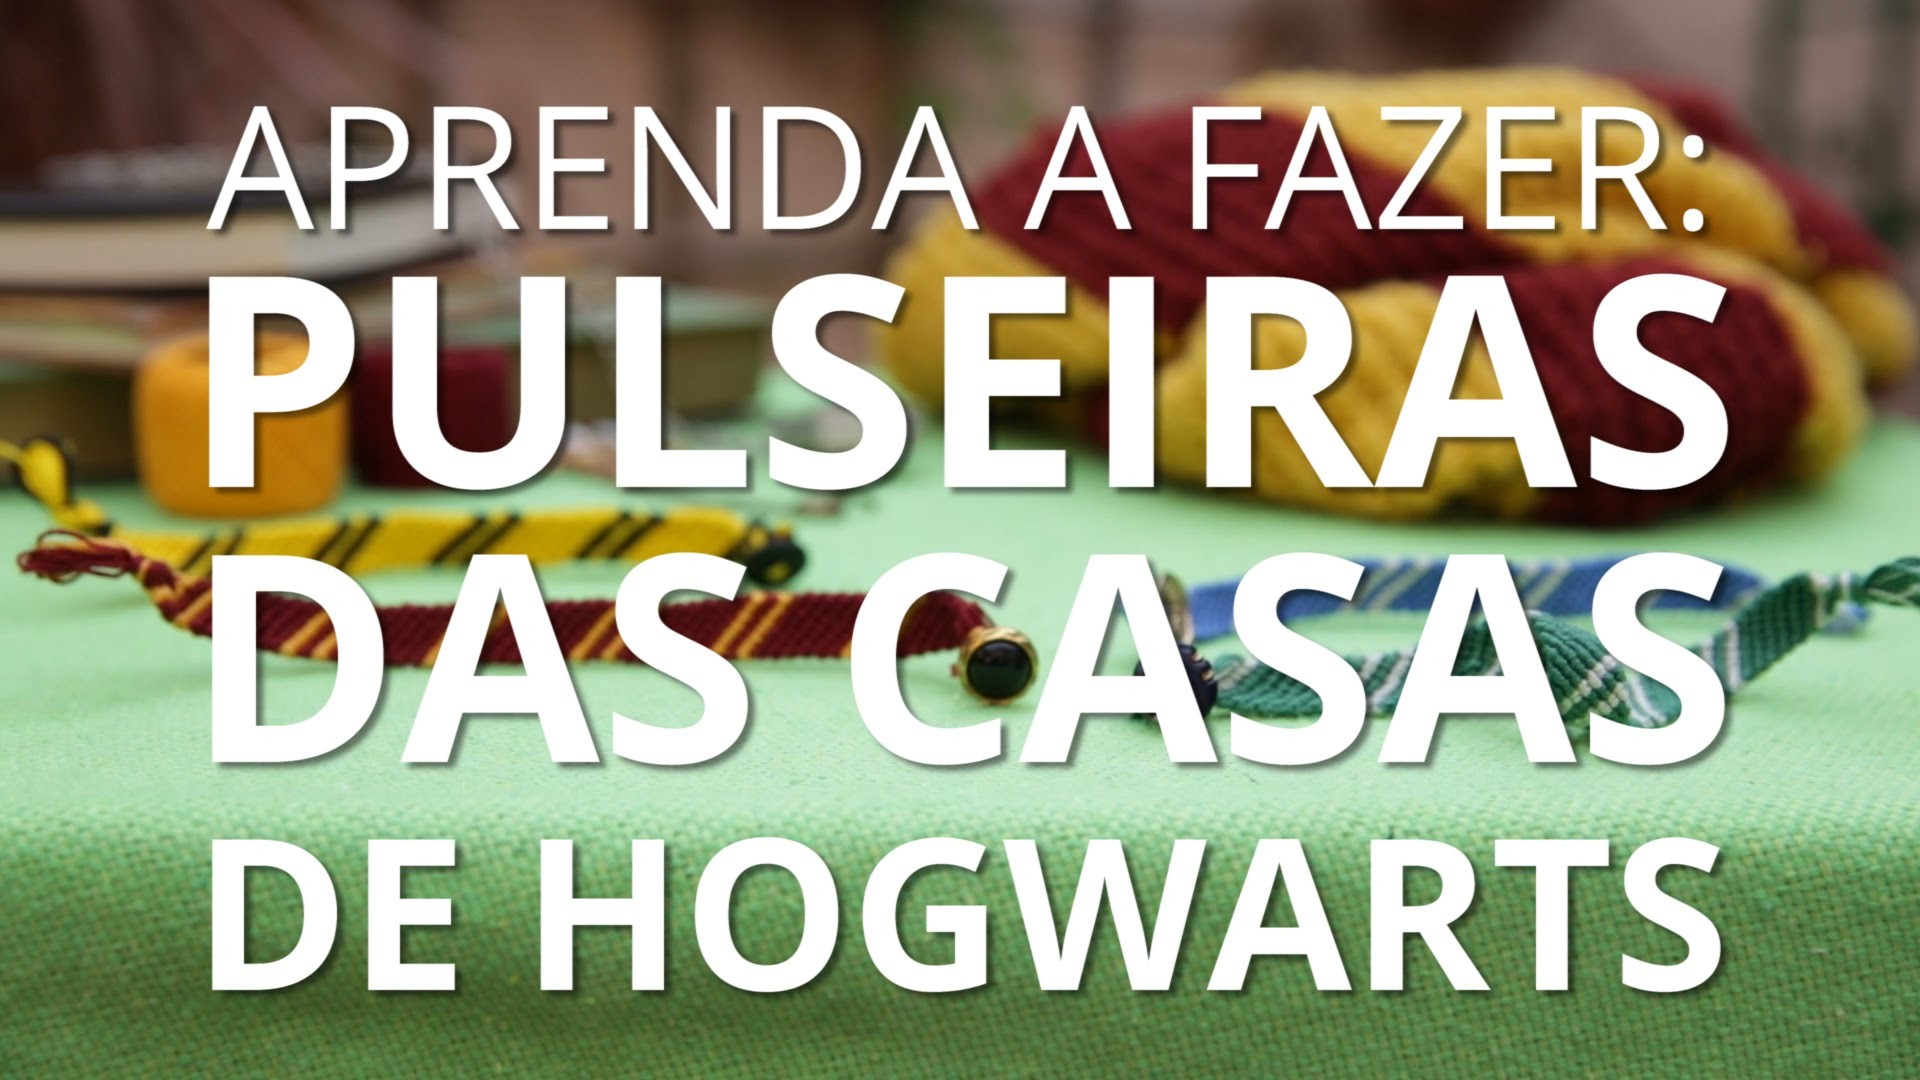 DIY: Pulseiras das Casas de Hogwarts